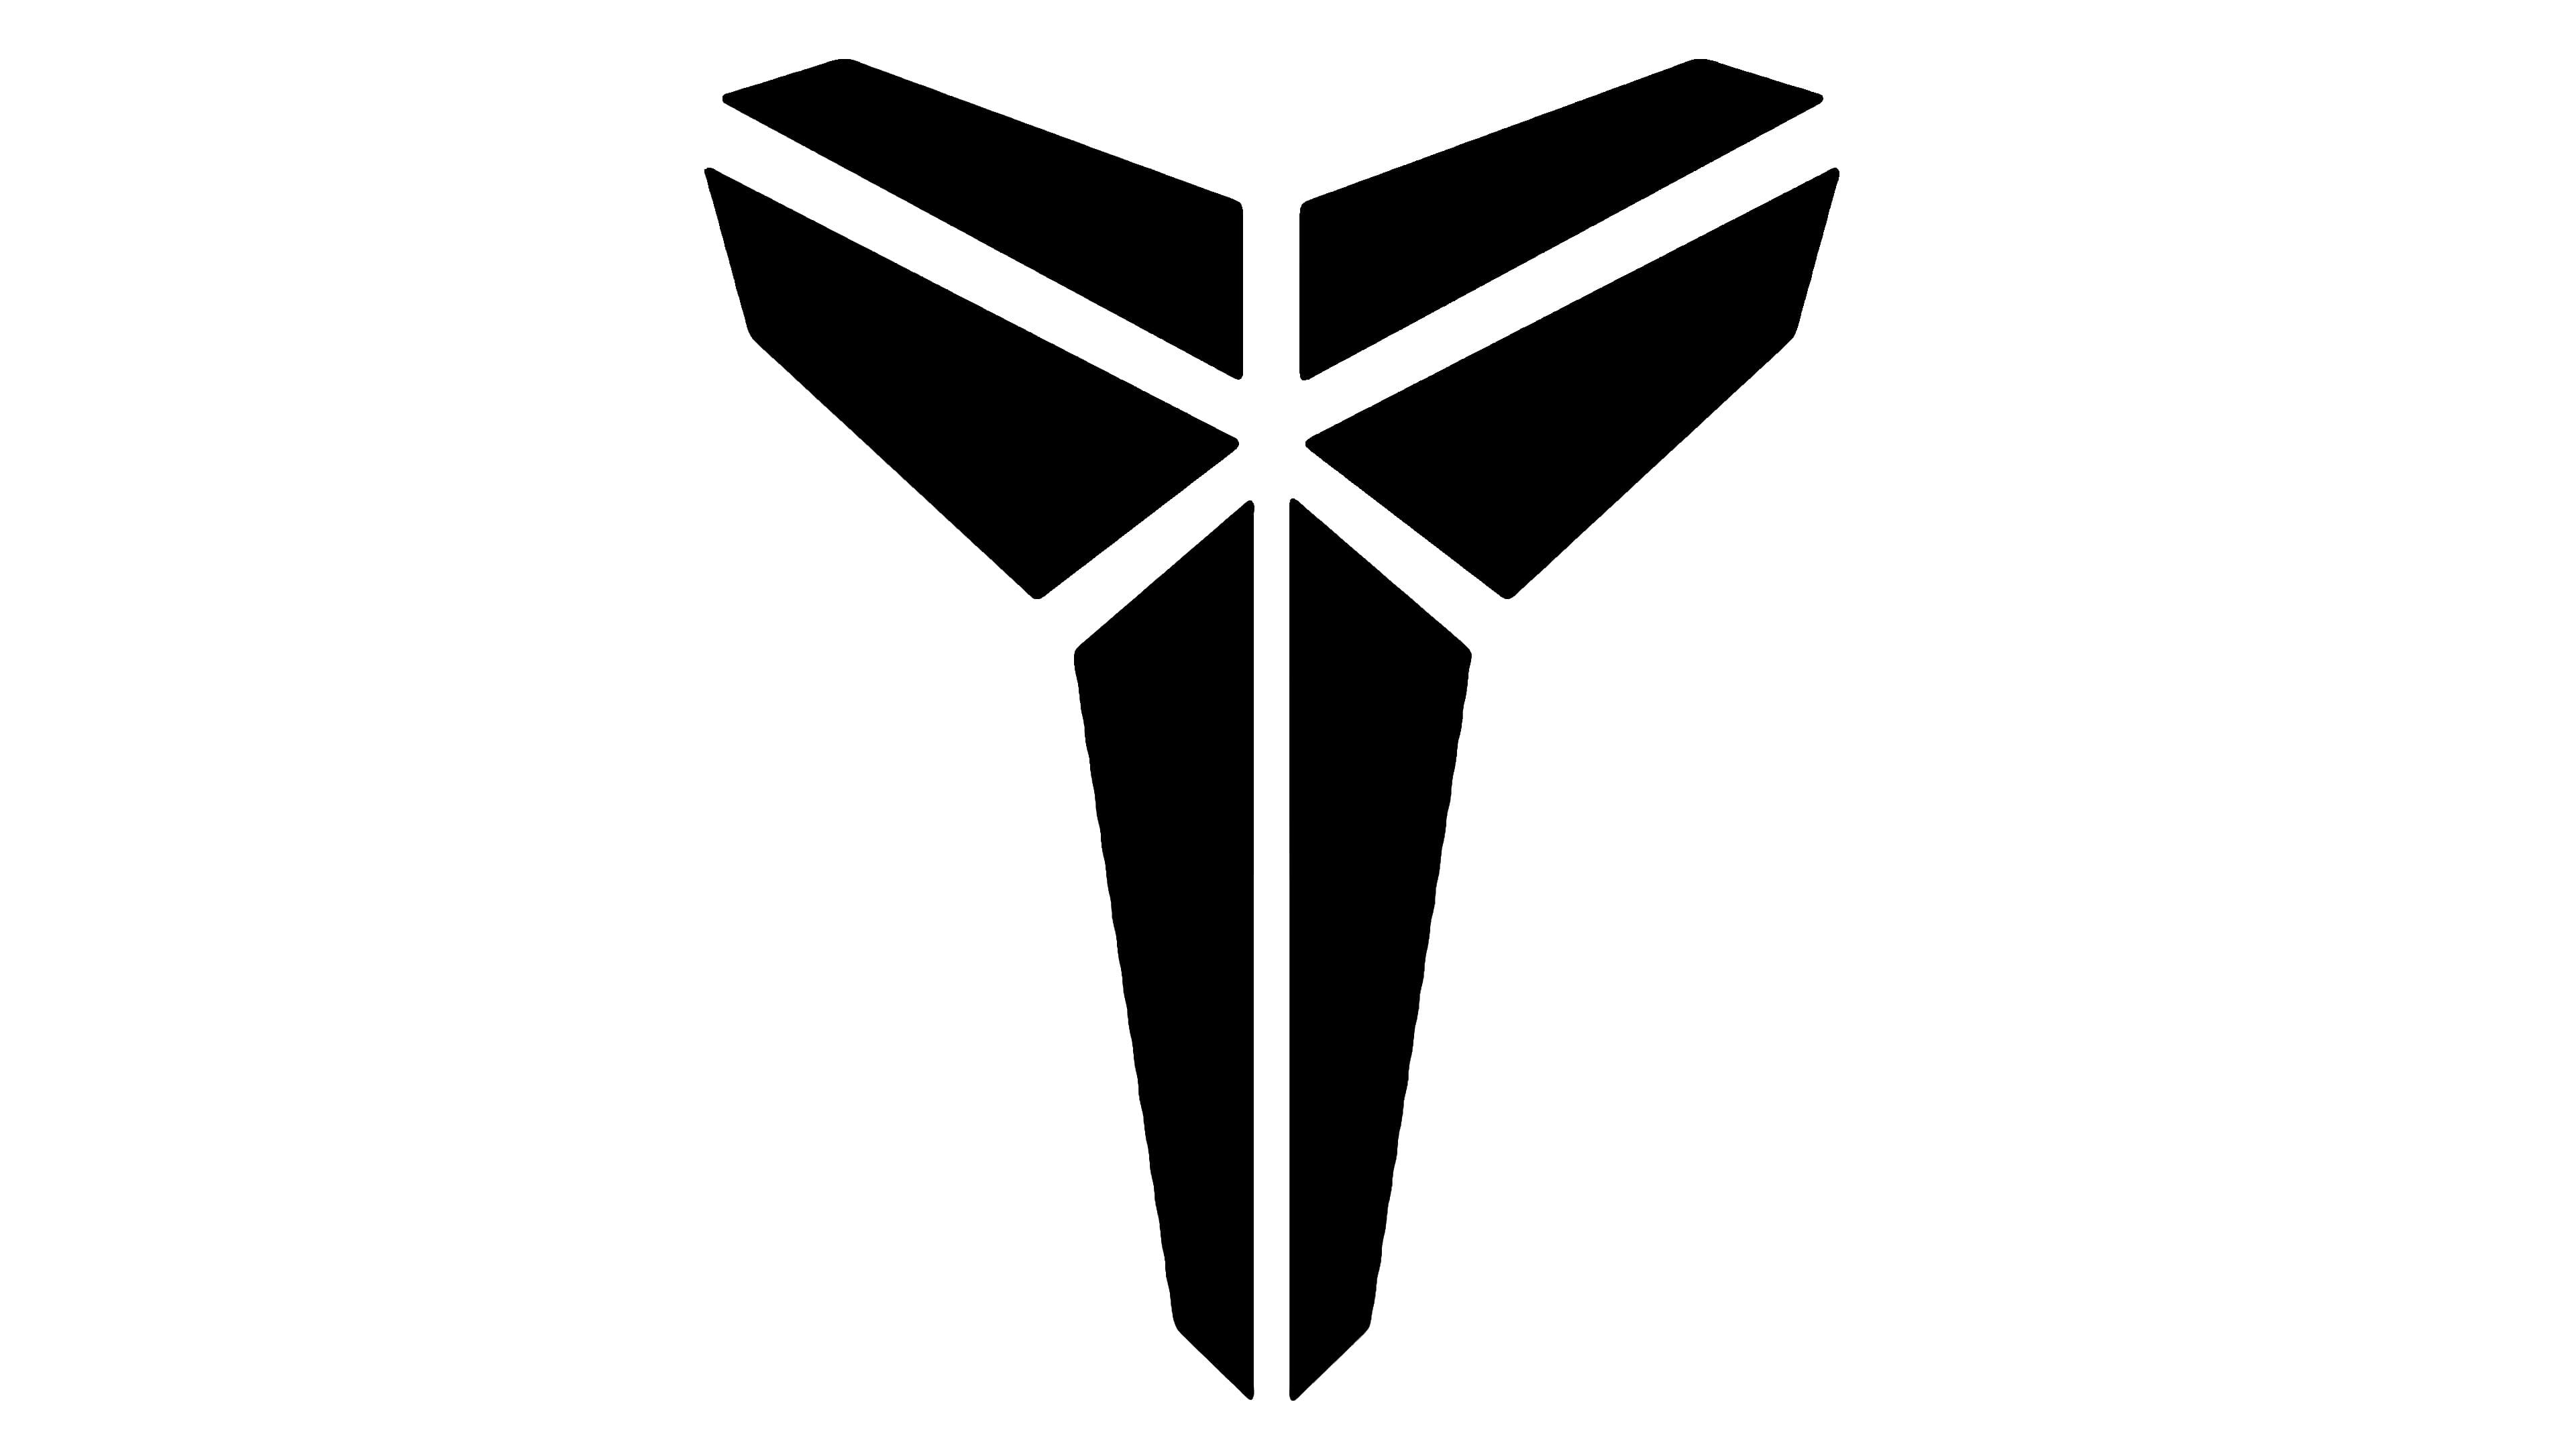 kobe bryant logo meaning